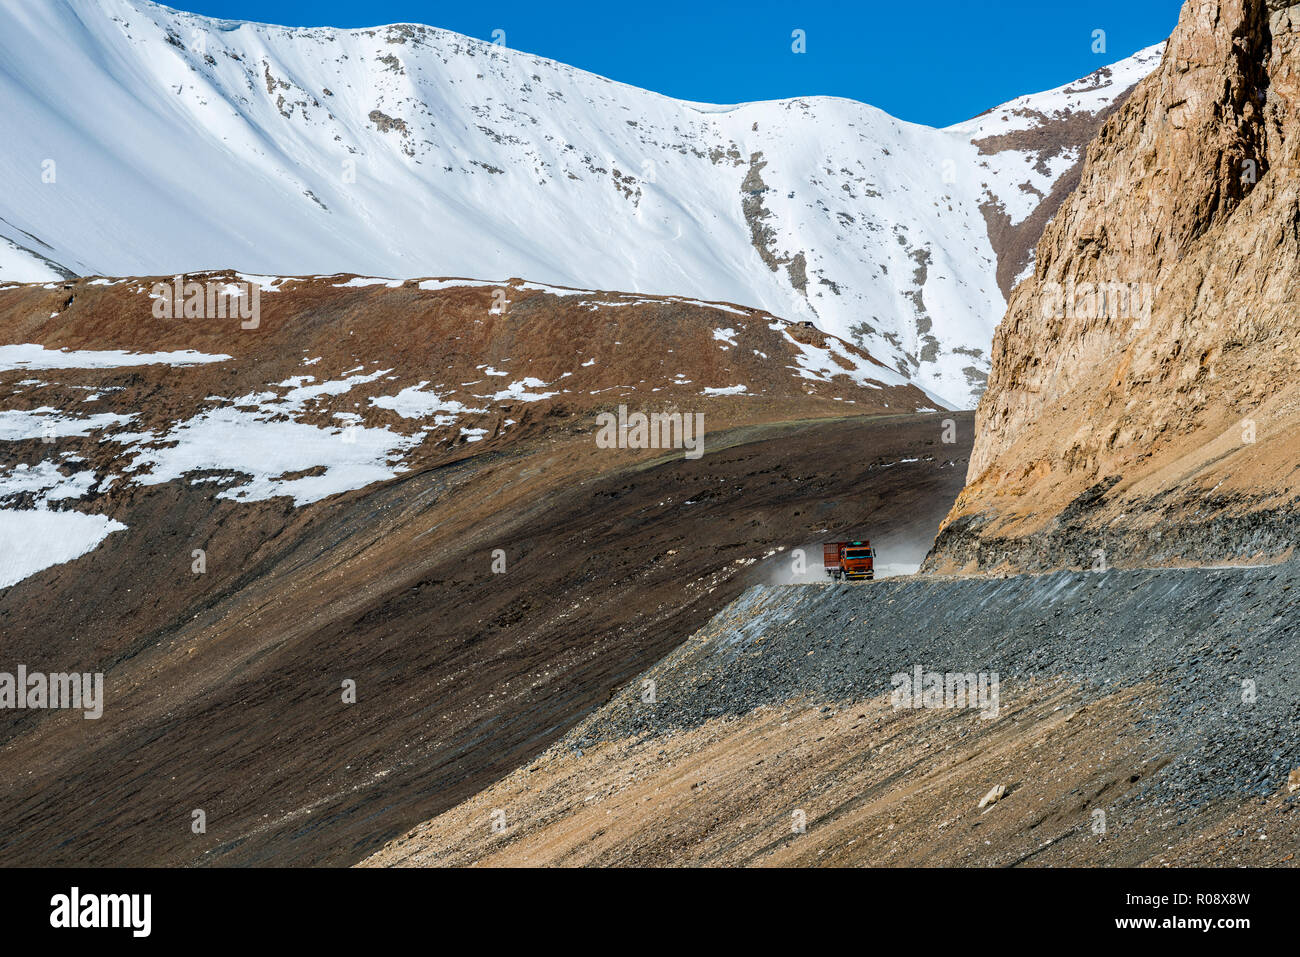 Ein Lkw fahren auf der staubigen Straße bis zum Taglang La (5.325 m), den höchsten Pass auf dem manali-leh Highway Stockfoto